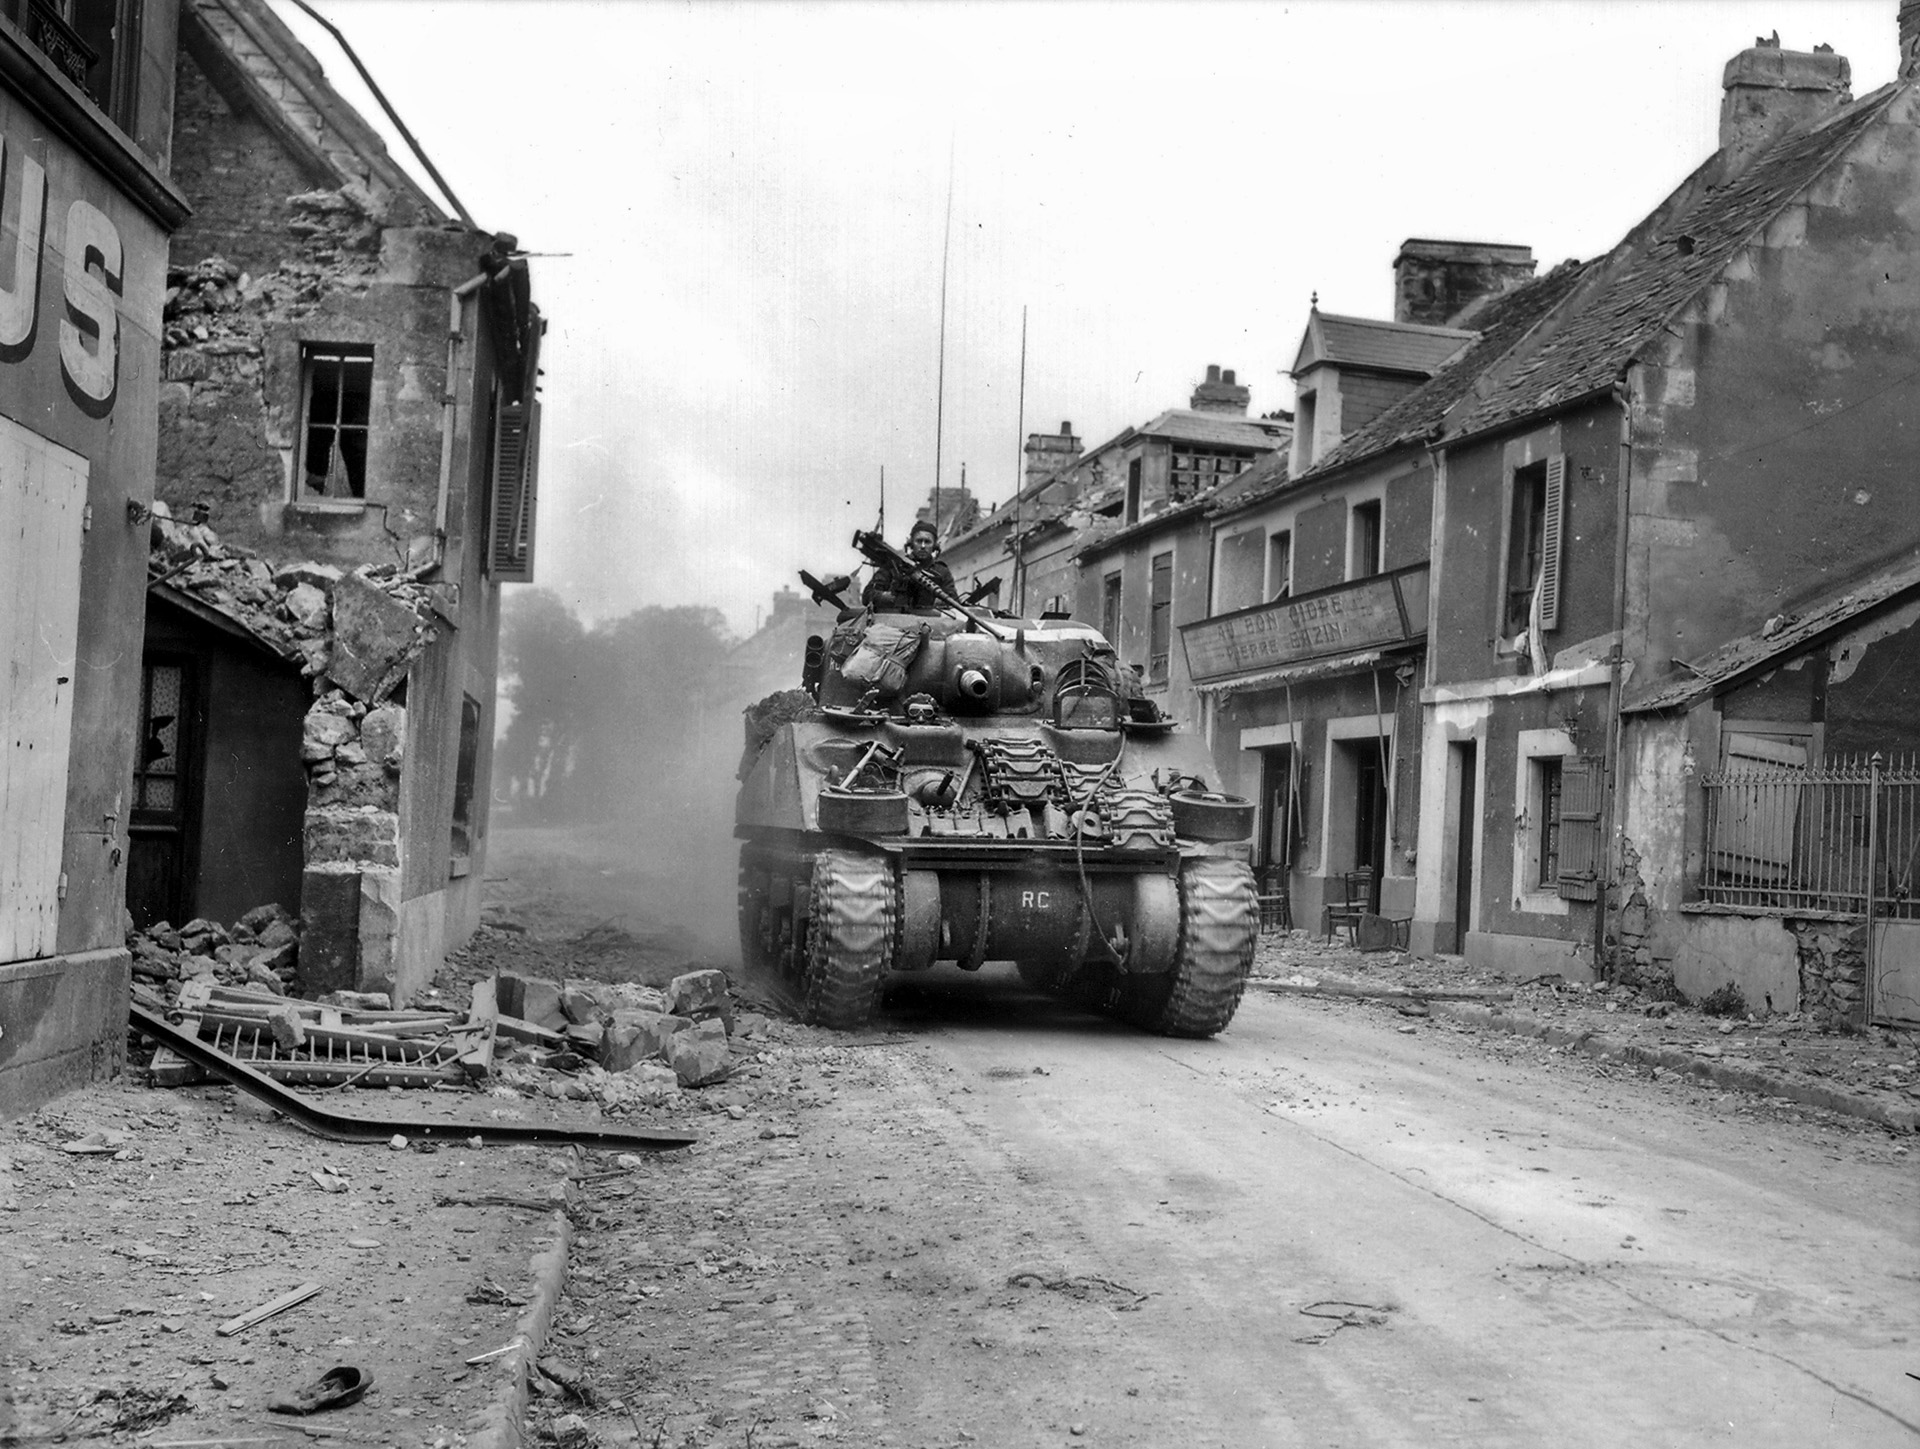 德国人撤出卡昂后，加拿大第27坦克团的一辆谢尔曼坦克在破碎荒凉的街道上行驶。英国/加拿大损失了数千人和300-500辆坦克。夺取卡昂的拖延严重损害了蒙哥马利在盟军中的声誉。